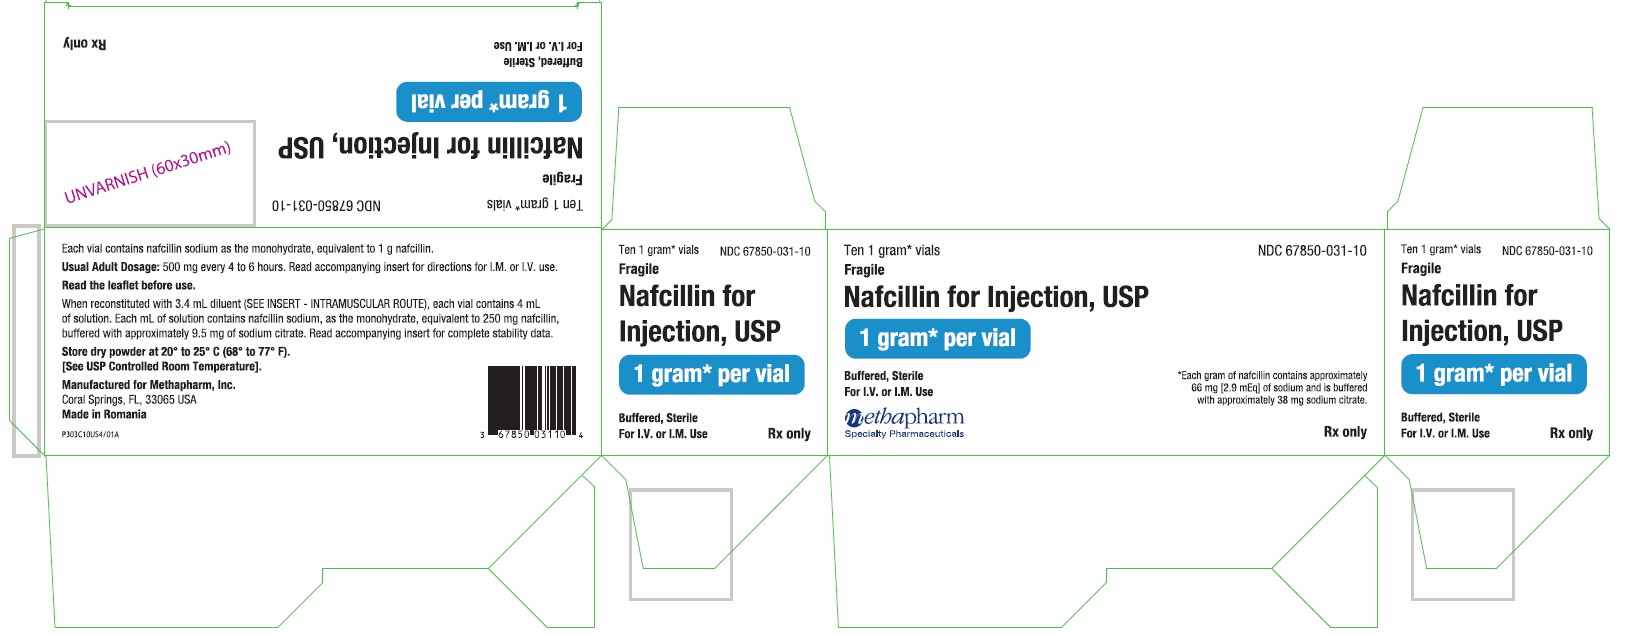 Nafcillin-Carton Label-1g